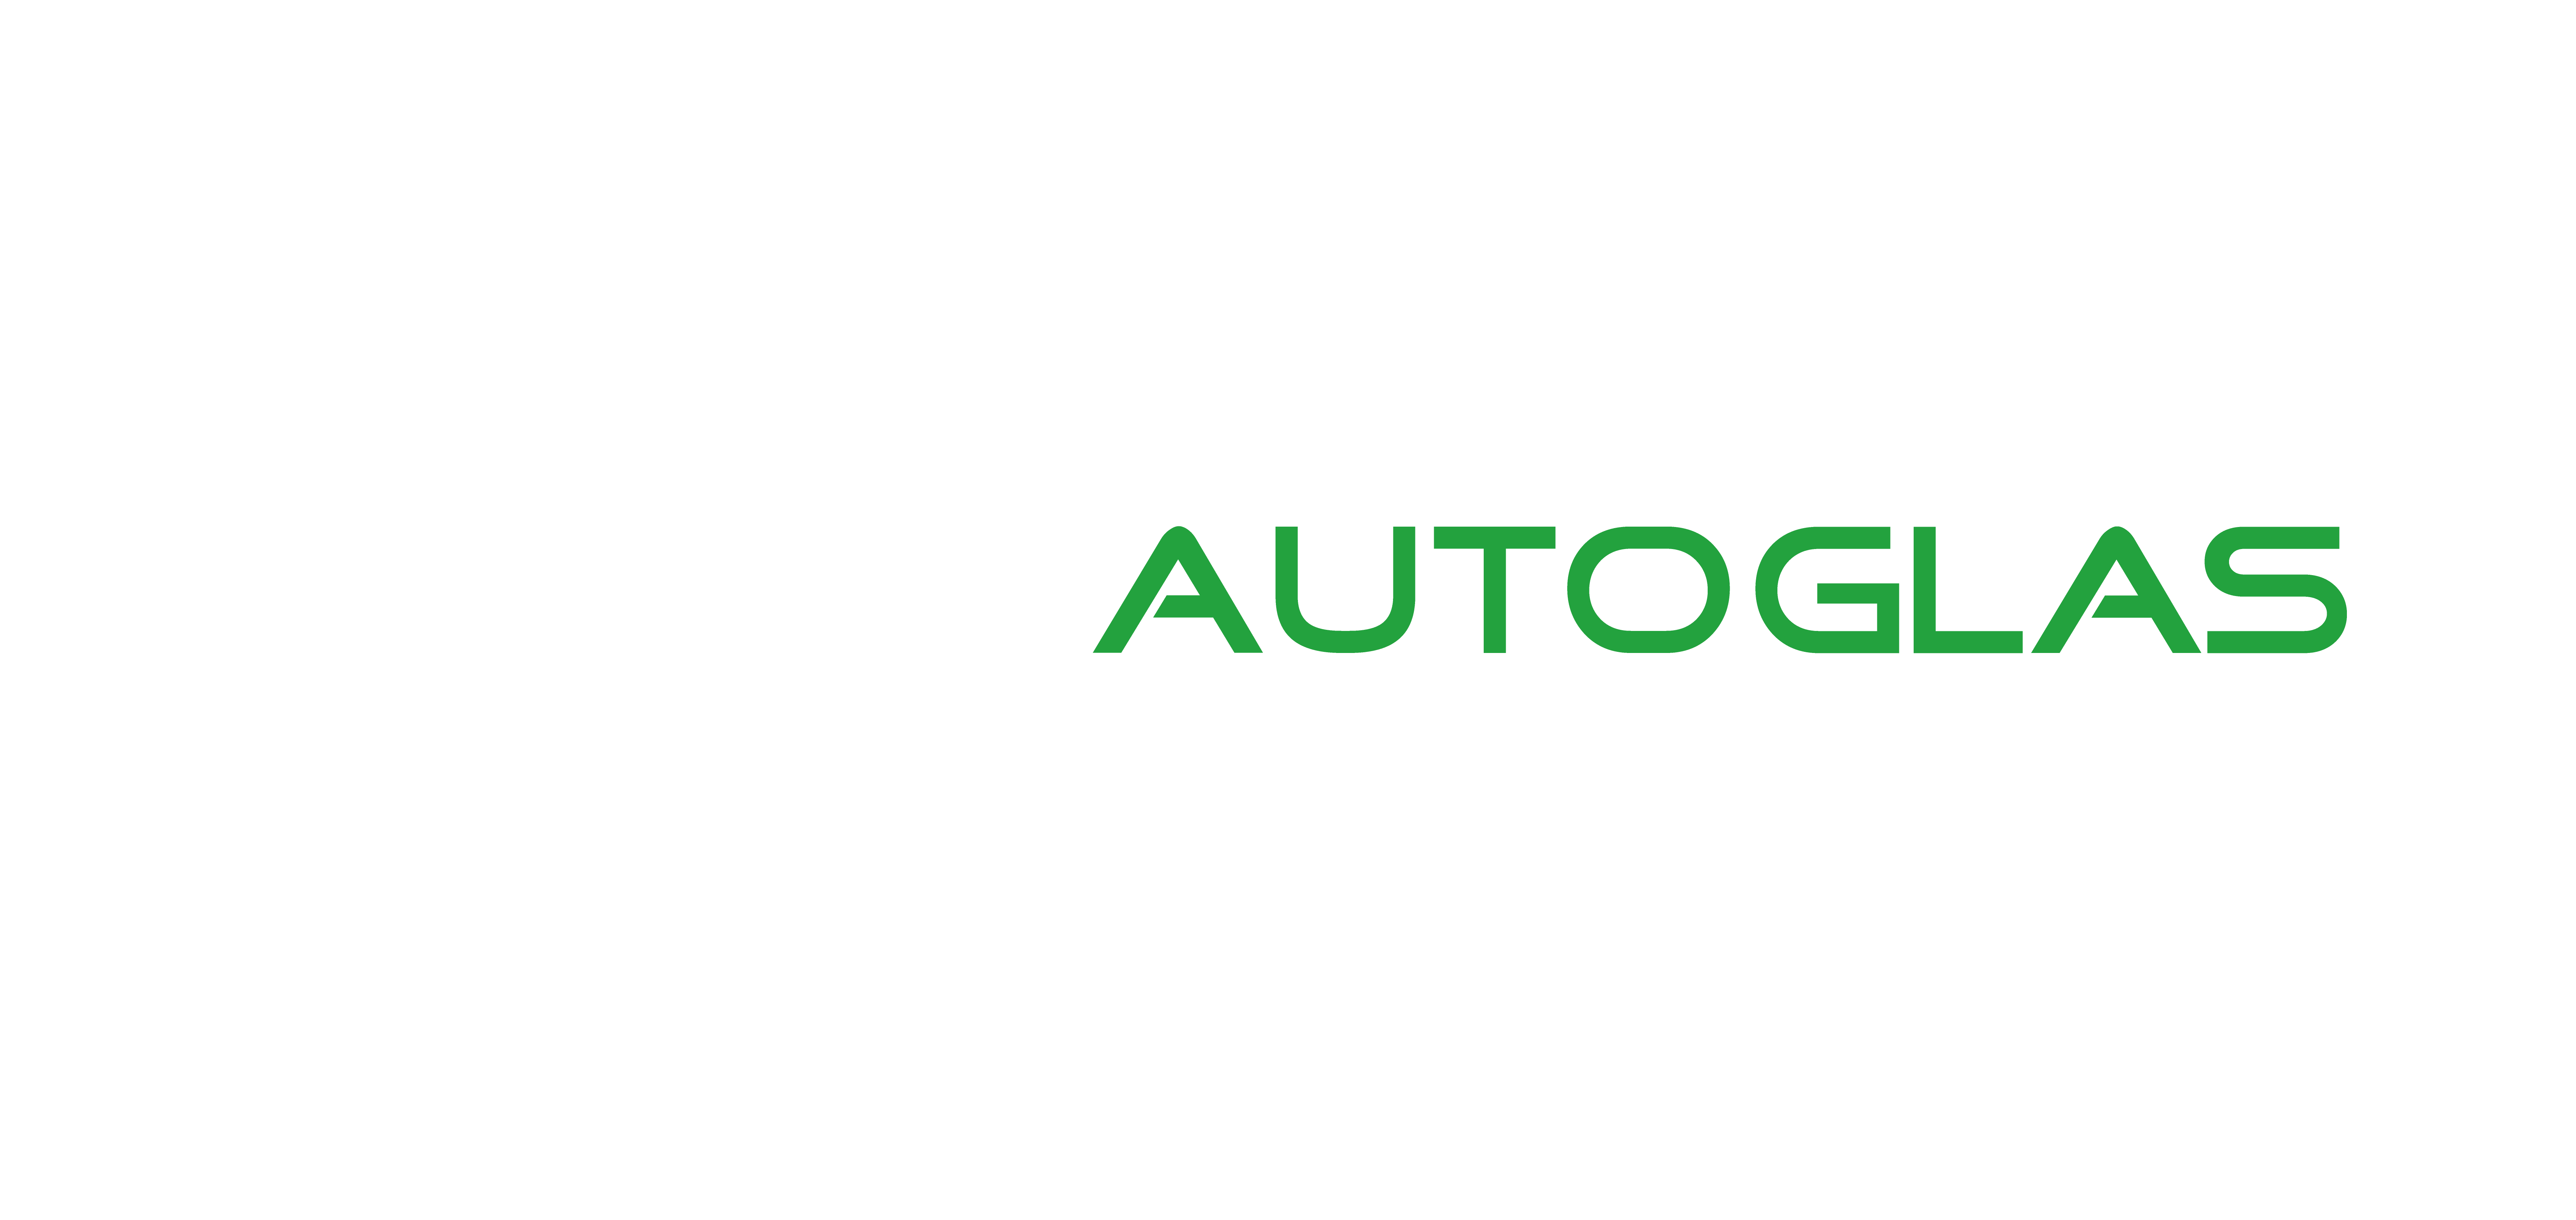 Autoglas Friesacher - Ihr Partner für professionelle Autoverglasung und -reparatur